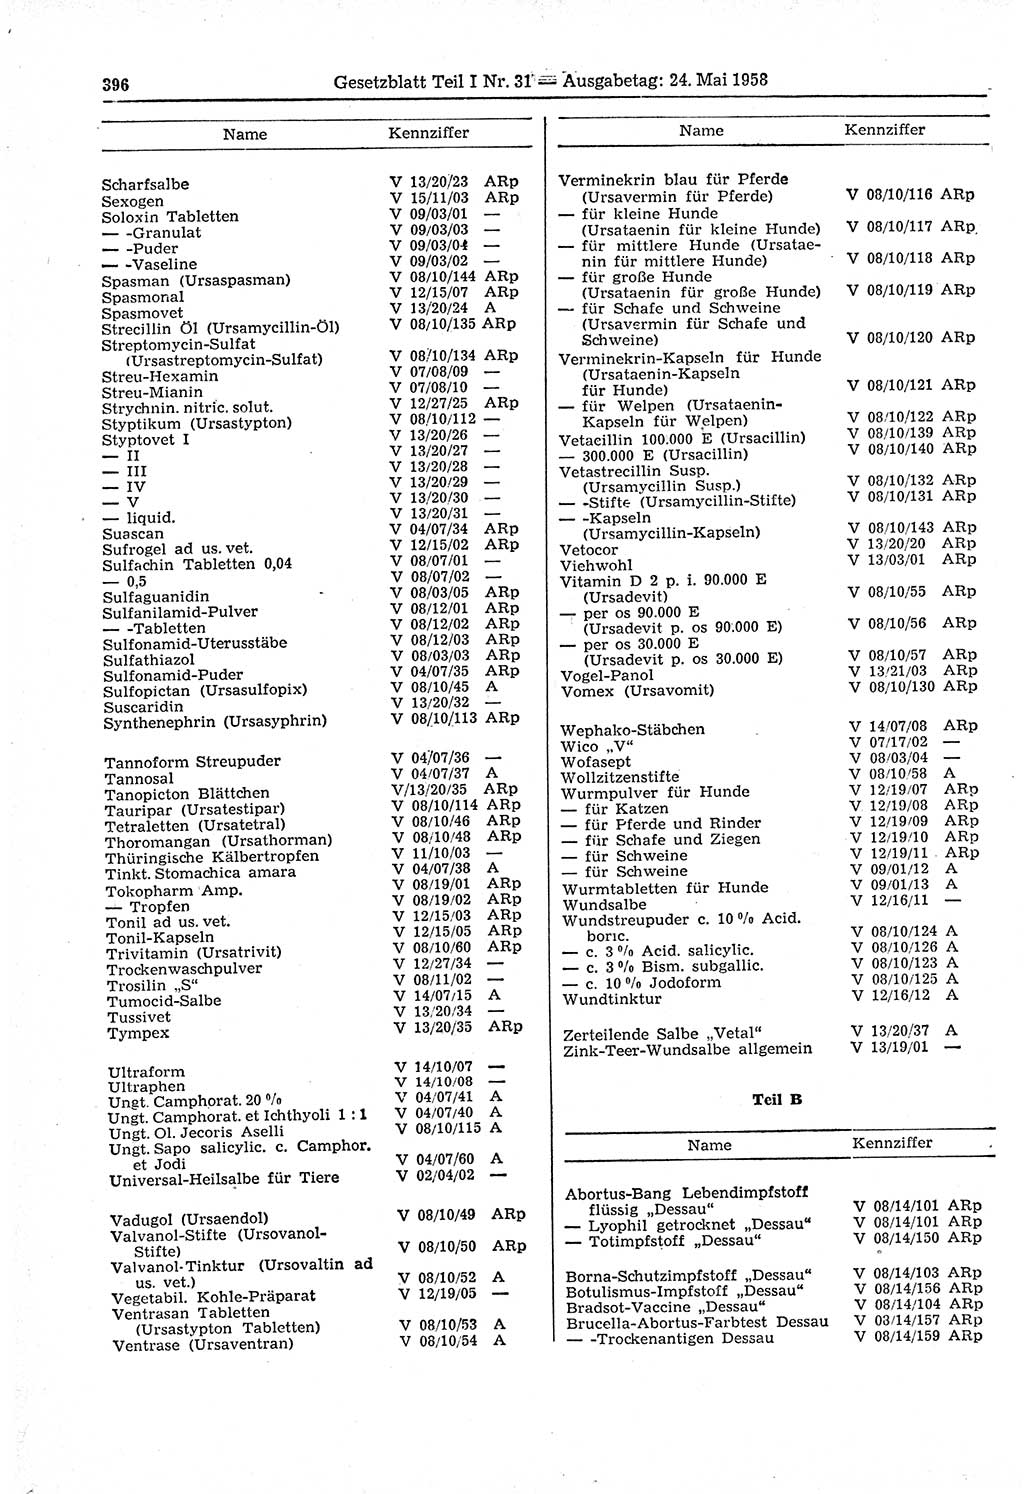 Gesetzblatt (GBl.) der Deutschen Demokratischen Republik (DDR) Teil Ⅰ 1958, Seite 396 (GBl. DDR Ⅰ 1958, S. 396)